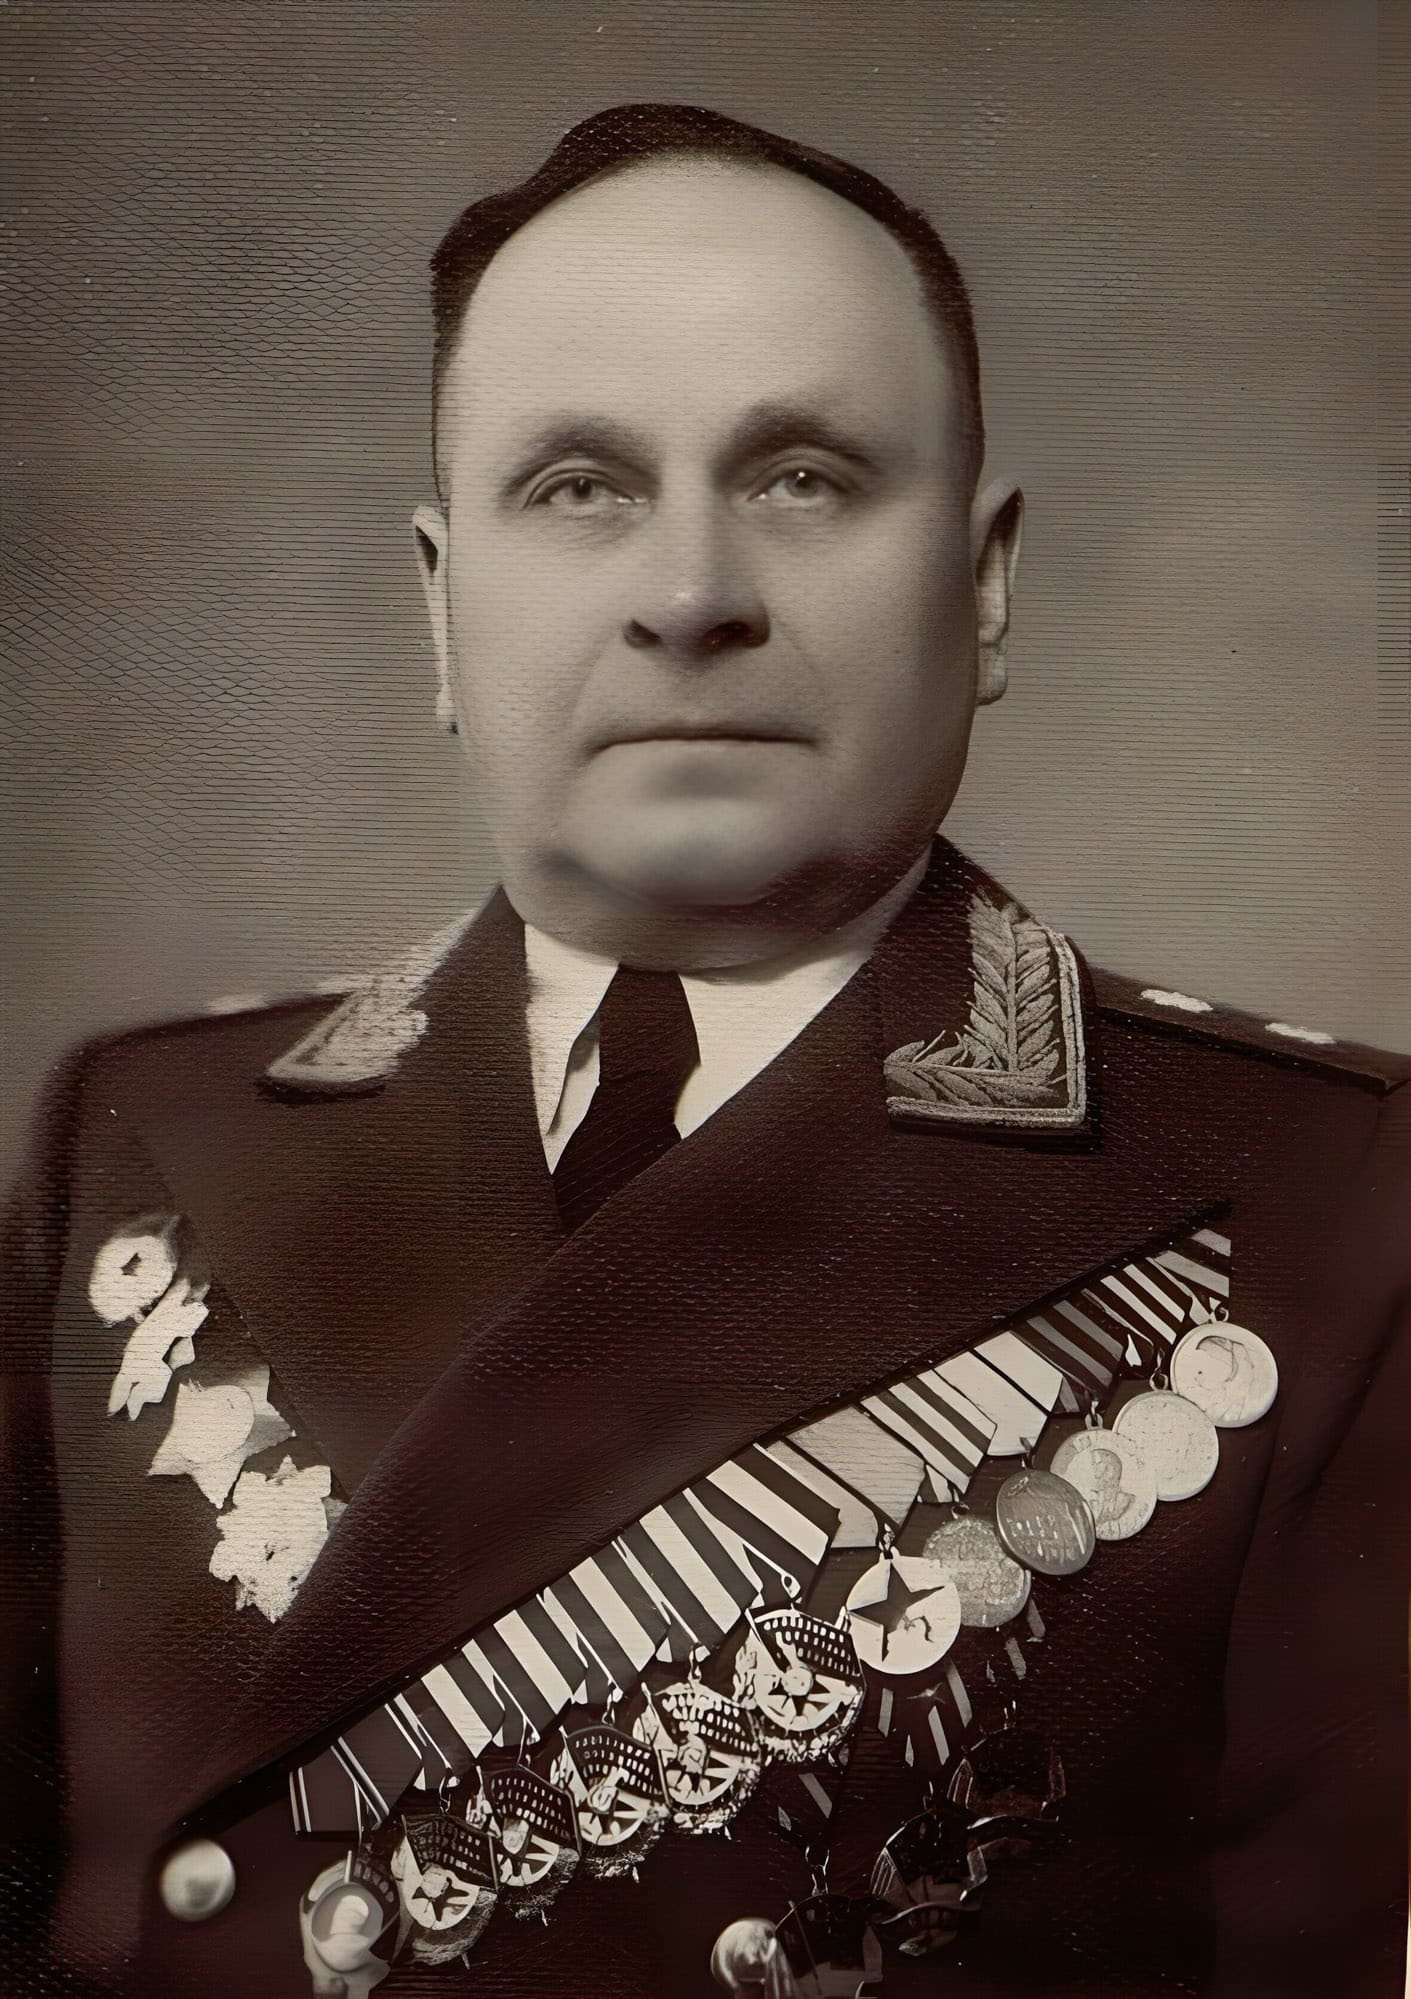 Фоканов Яков Степанович - командир 29-го гв. ск ЮЗФ, генерал-лейтенант